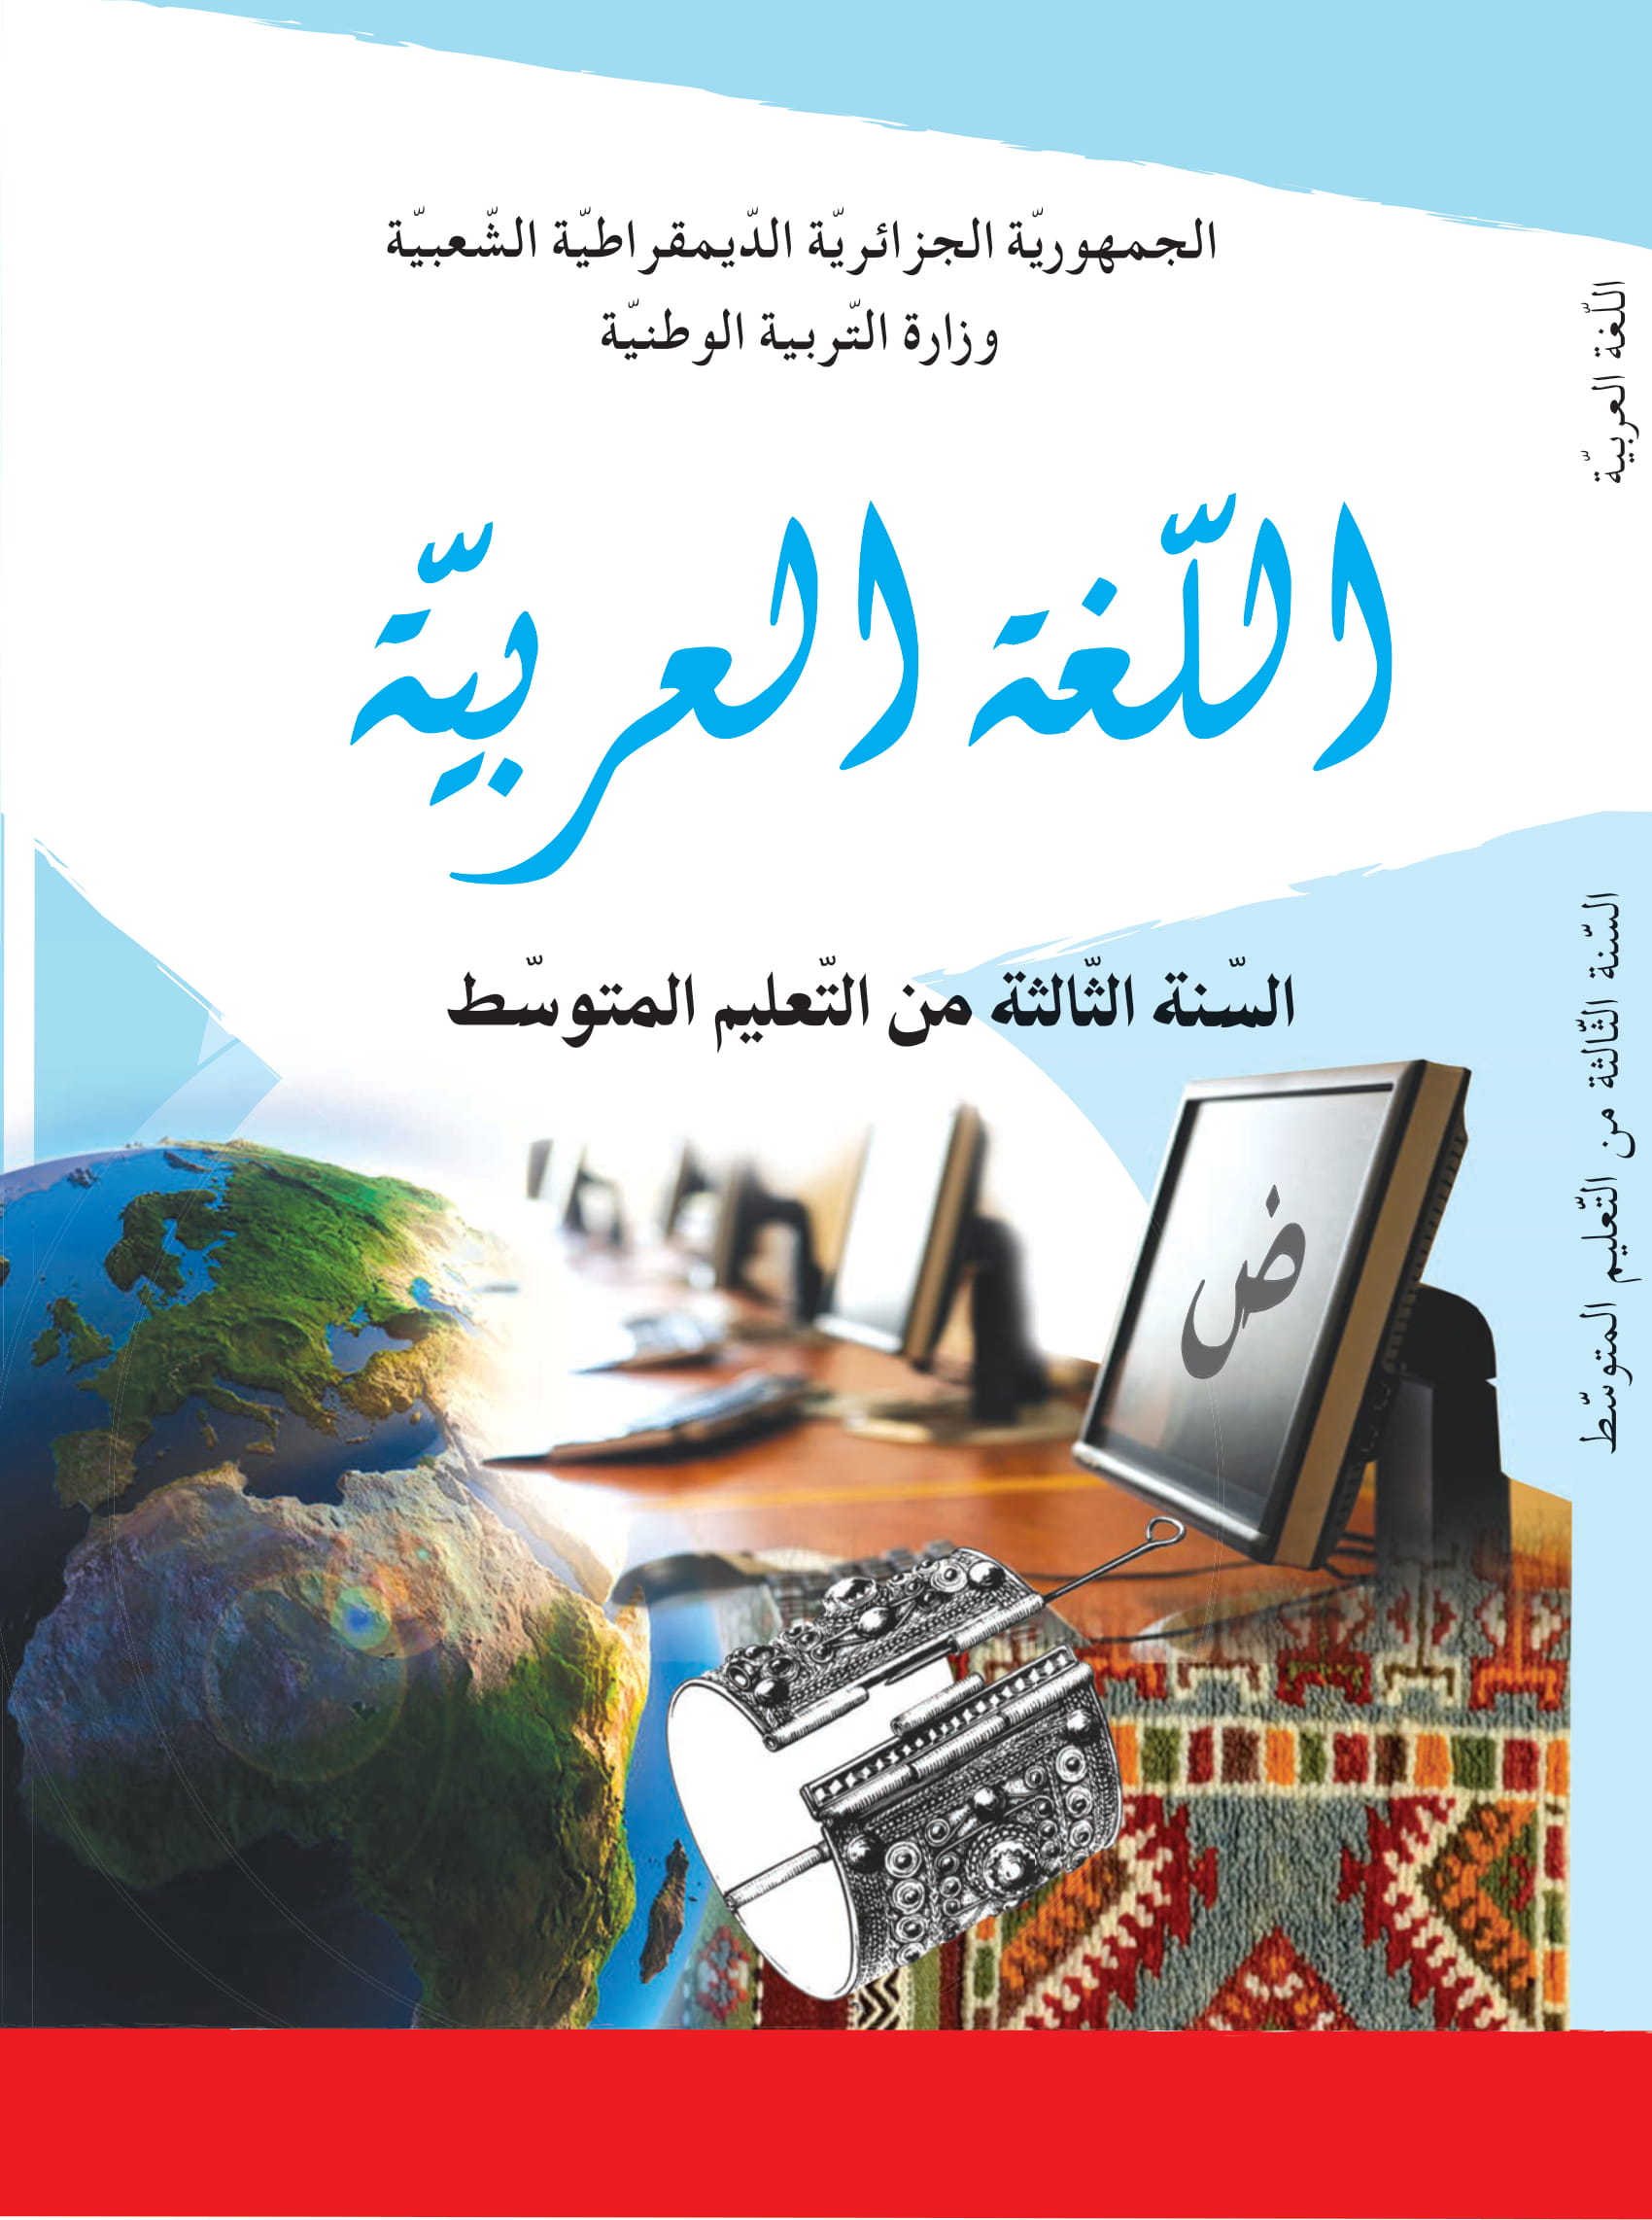 MS 901 couverture arabe 3am 1 - الديوان الوطني للمطبوعات المدرسية